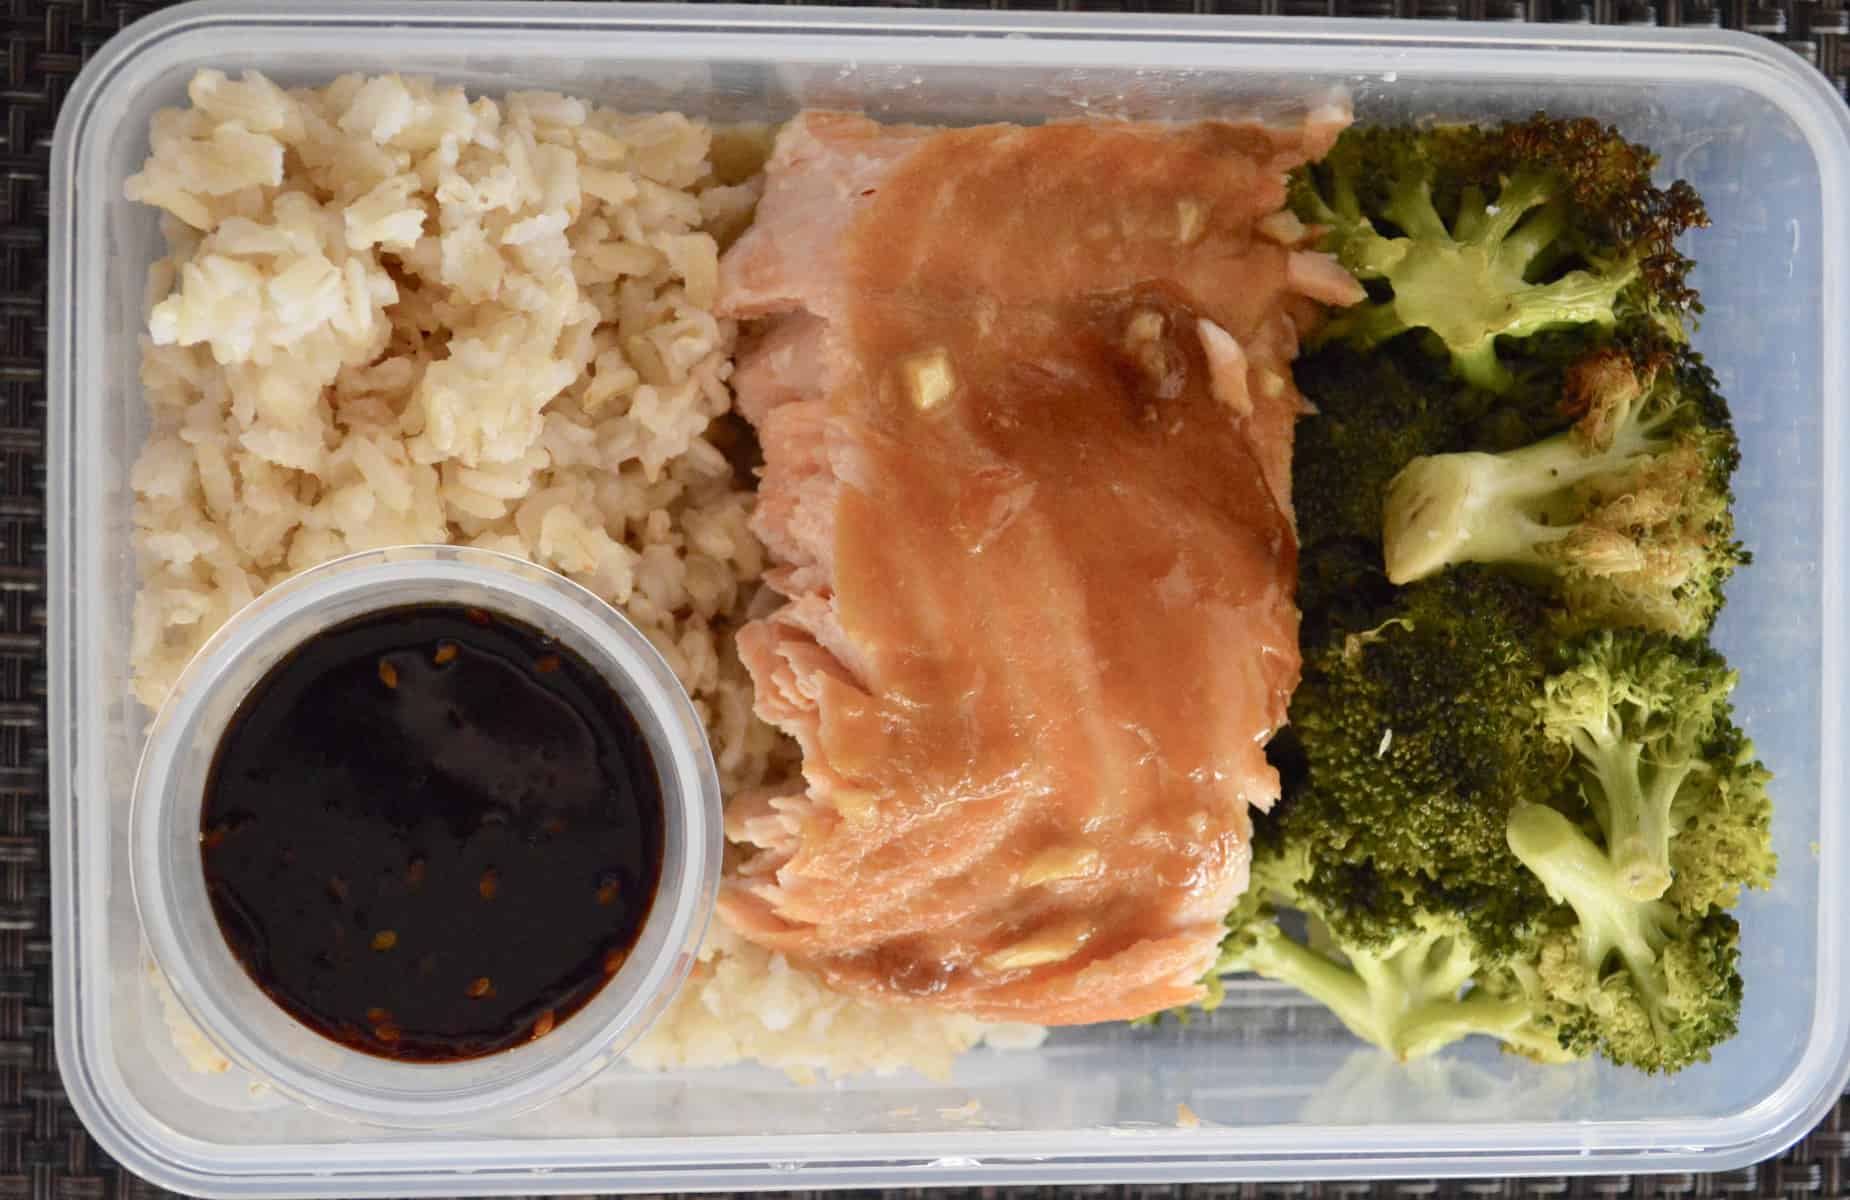 Meal Prep Salmon and Broccoli with teriyaki sauce for lunch 